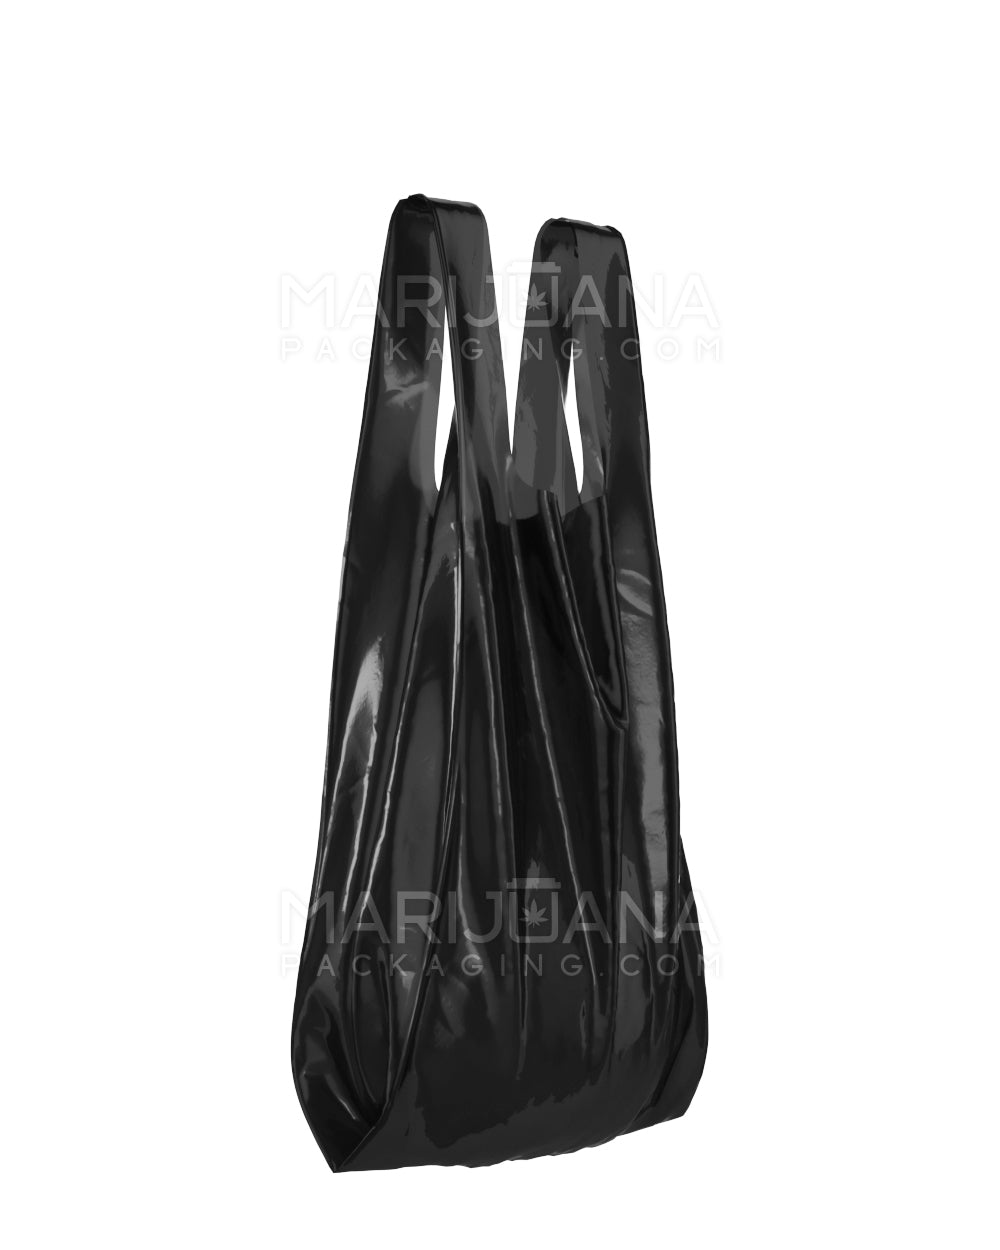 Medium Plastic Bag | 10in x 19in - Black - 1000 Count - 2